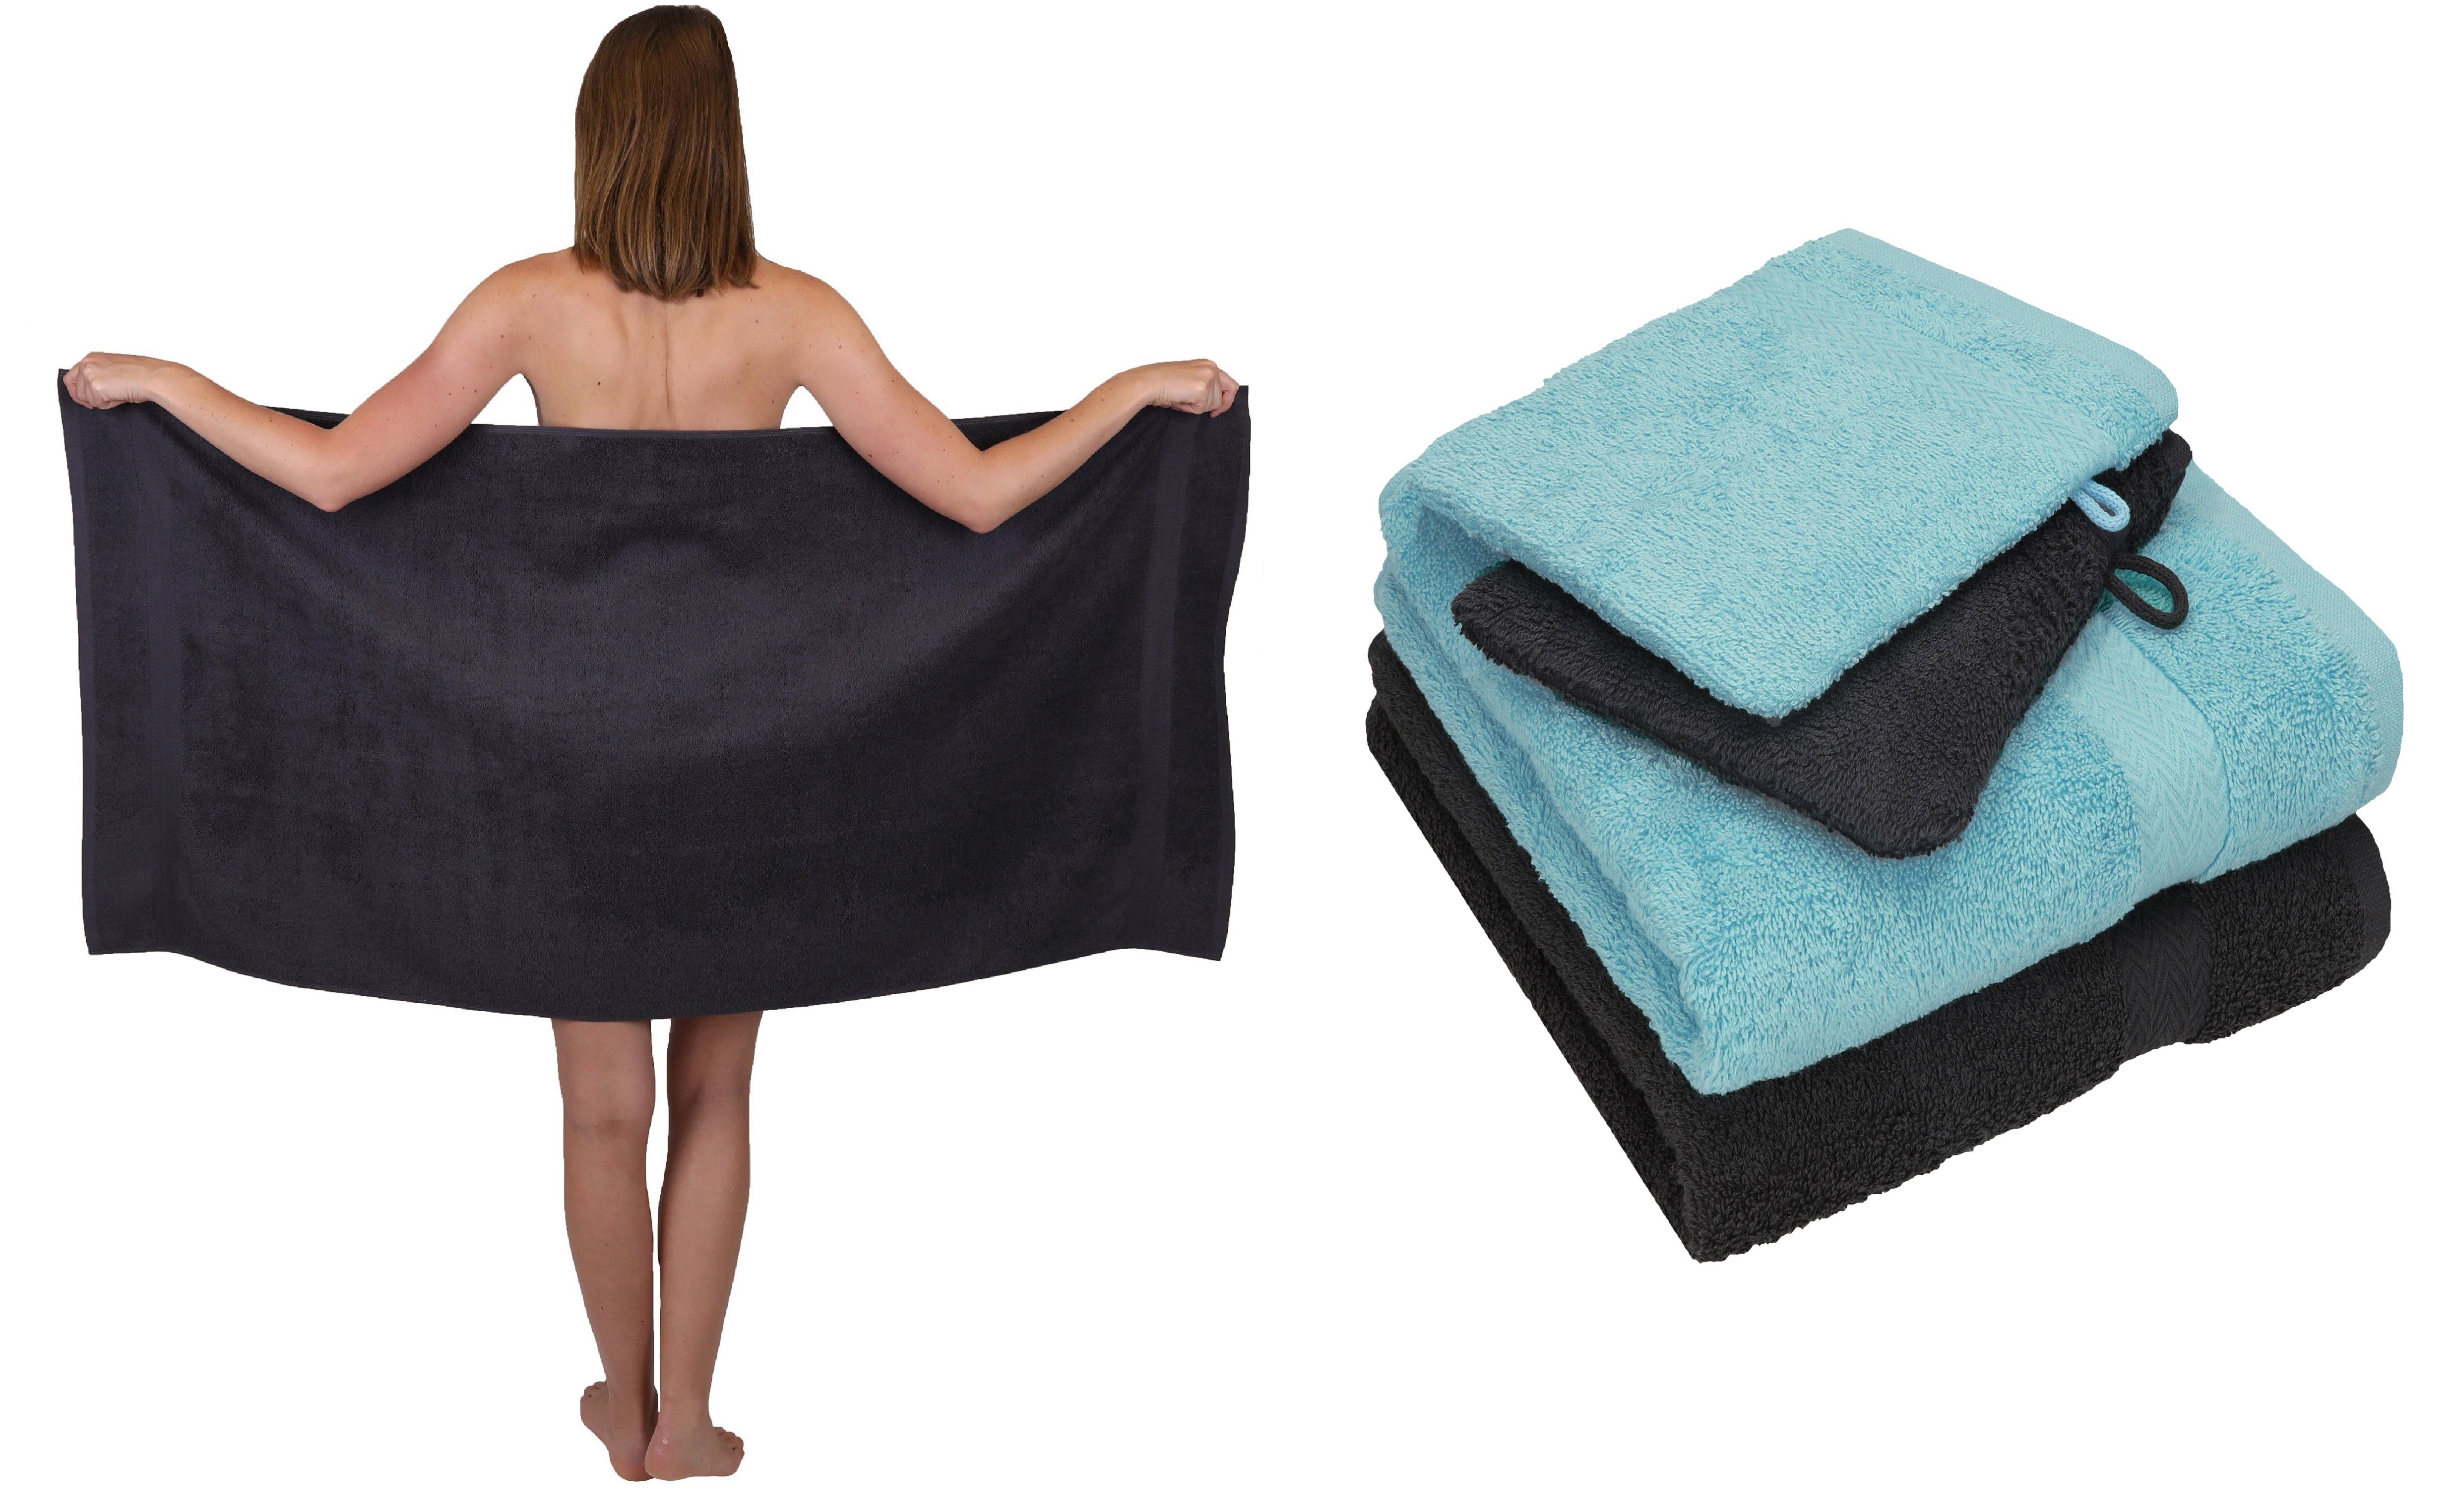 100% 2 5 Betz Handtücher Duschtuch TLG. ocean SINGLE PACK Baumwolle Handtuch Set graphit Baumwolle Set 2 100% Waschhandschuhe, und grau 1 Handtuch